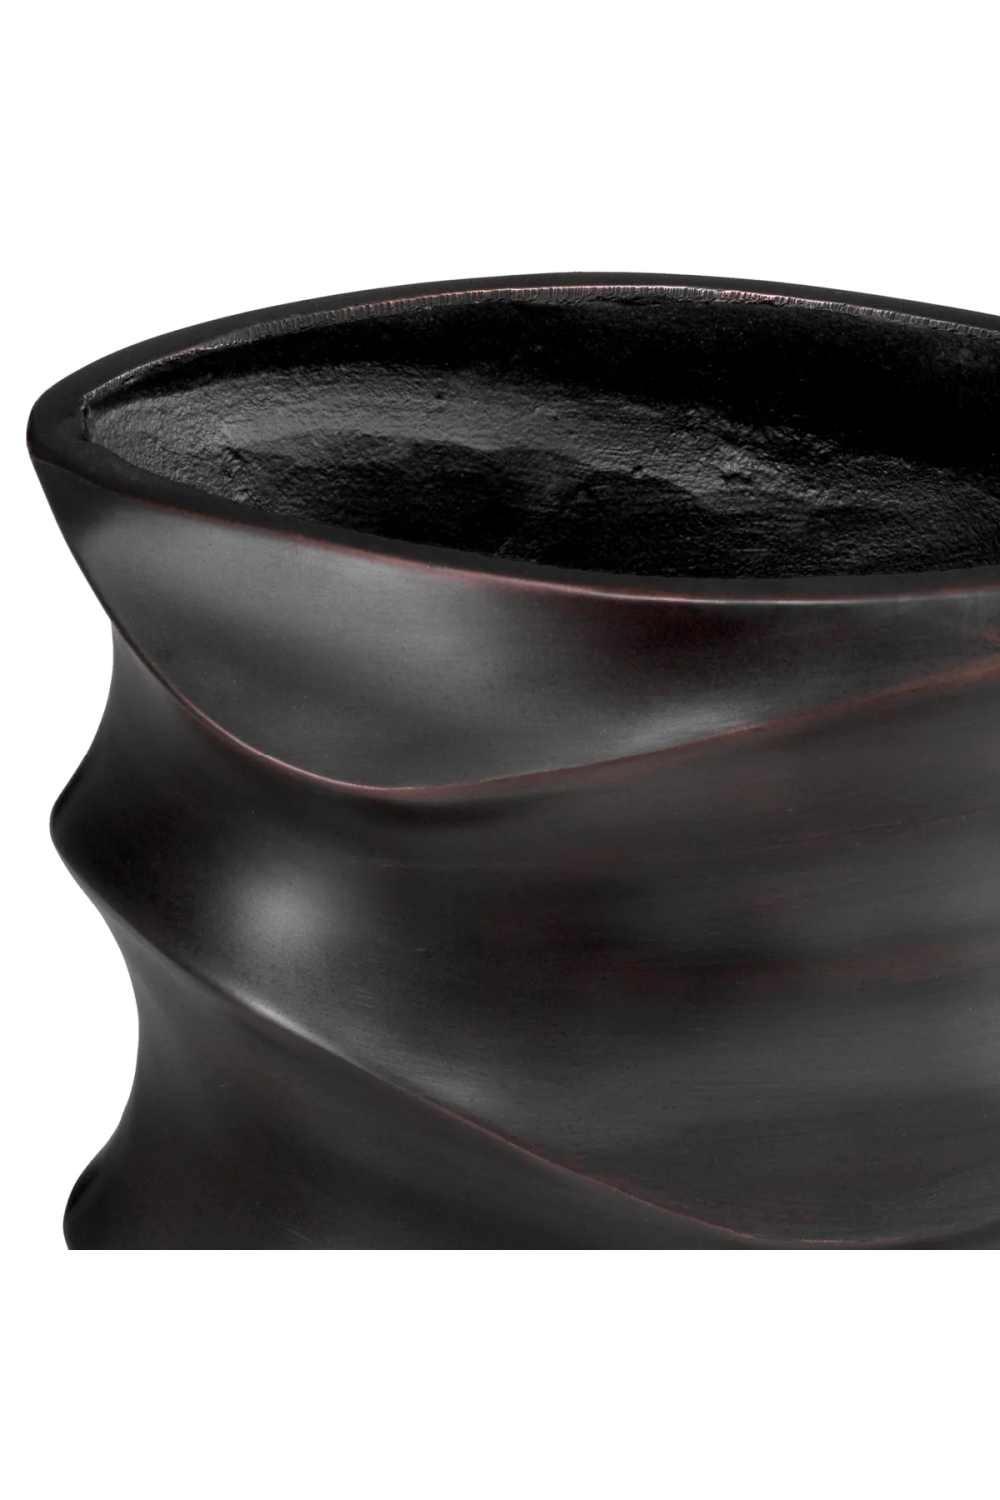 Modern Metallic Vase | Eichholtz Rapho | Oroa.com